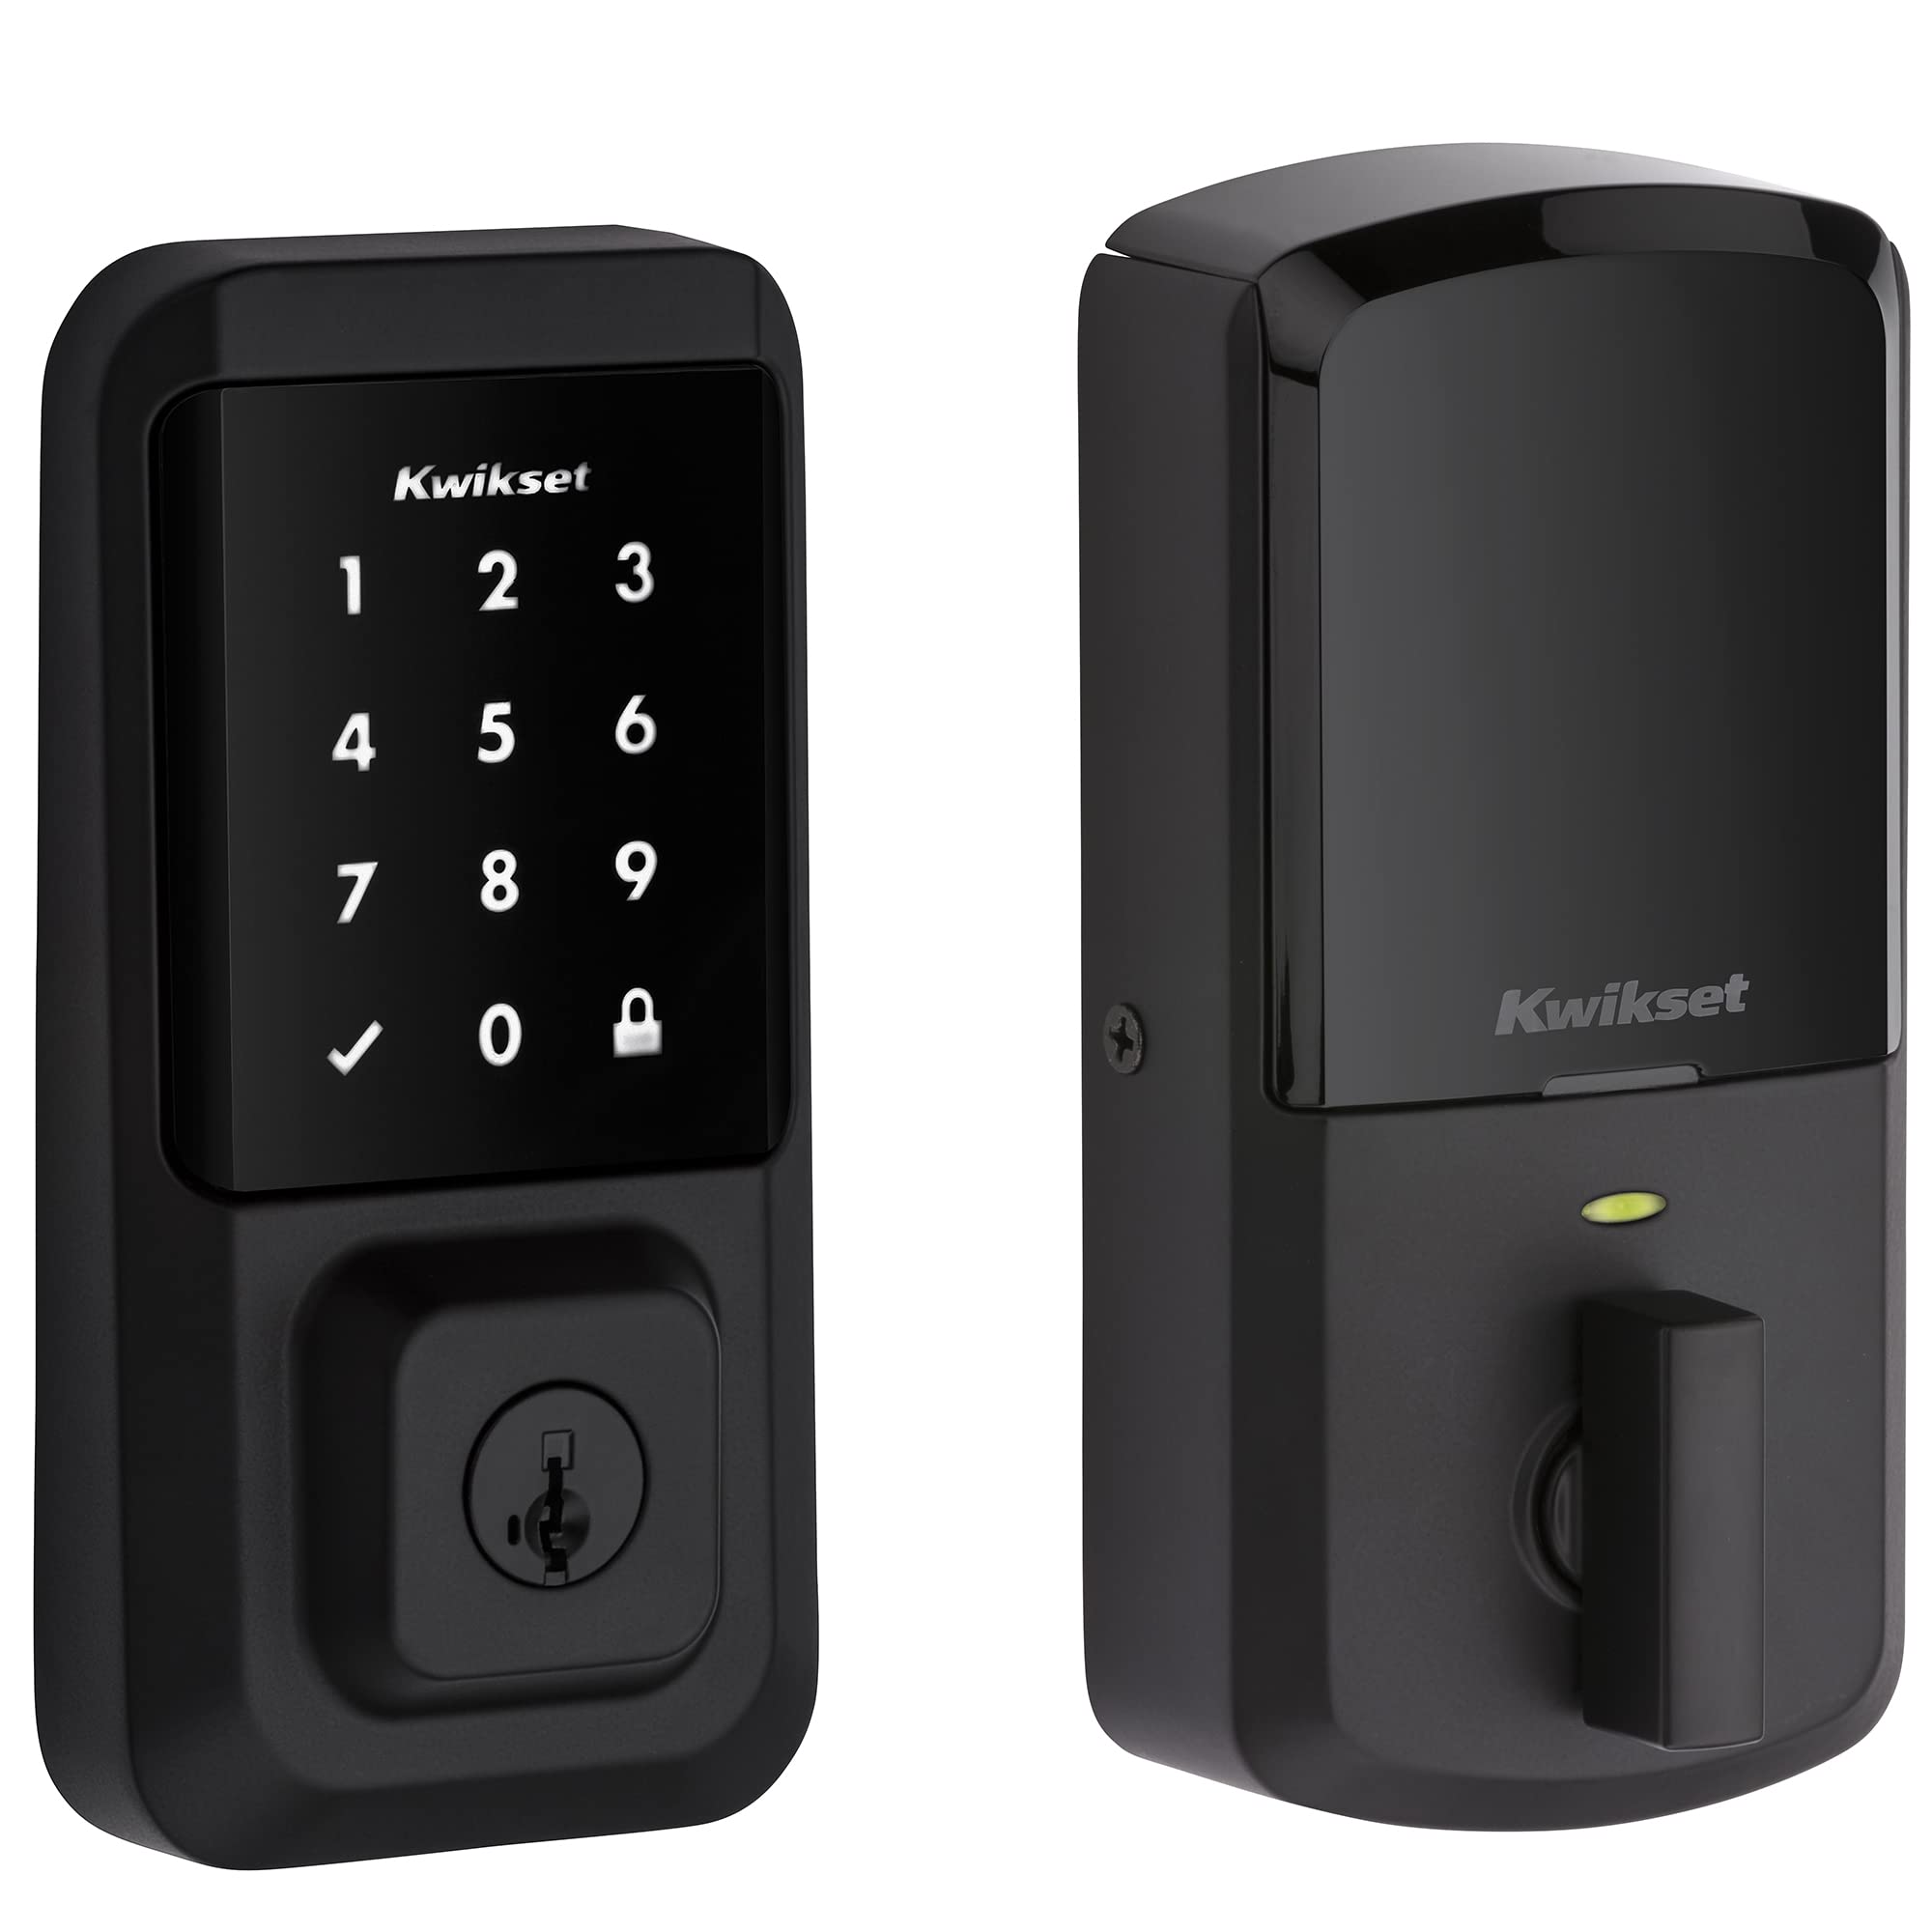 Kwikset 99390-001 Halo Wi-Fi Smart Lock Бесключевой доступ Электронный засов с сенсорным экраном с функцией безопасности SmartKey